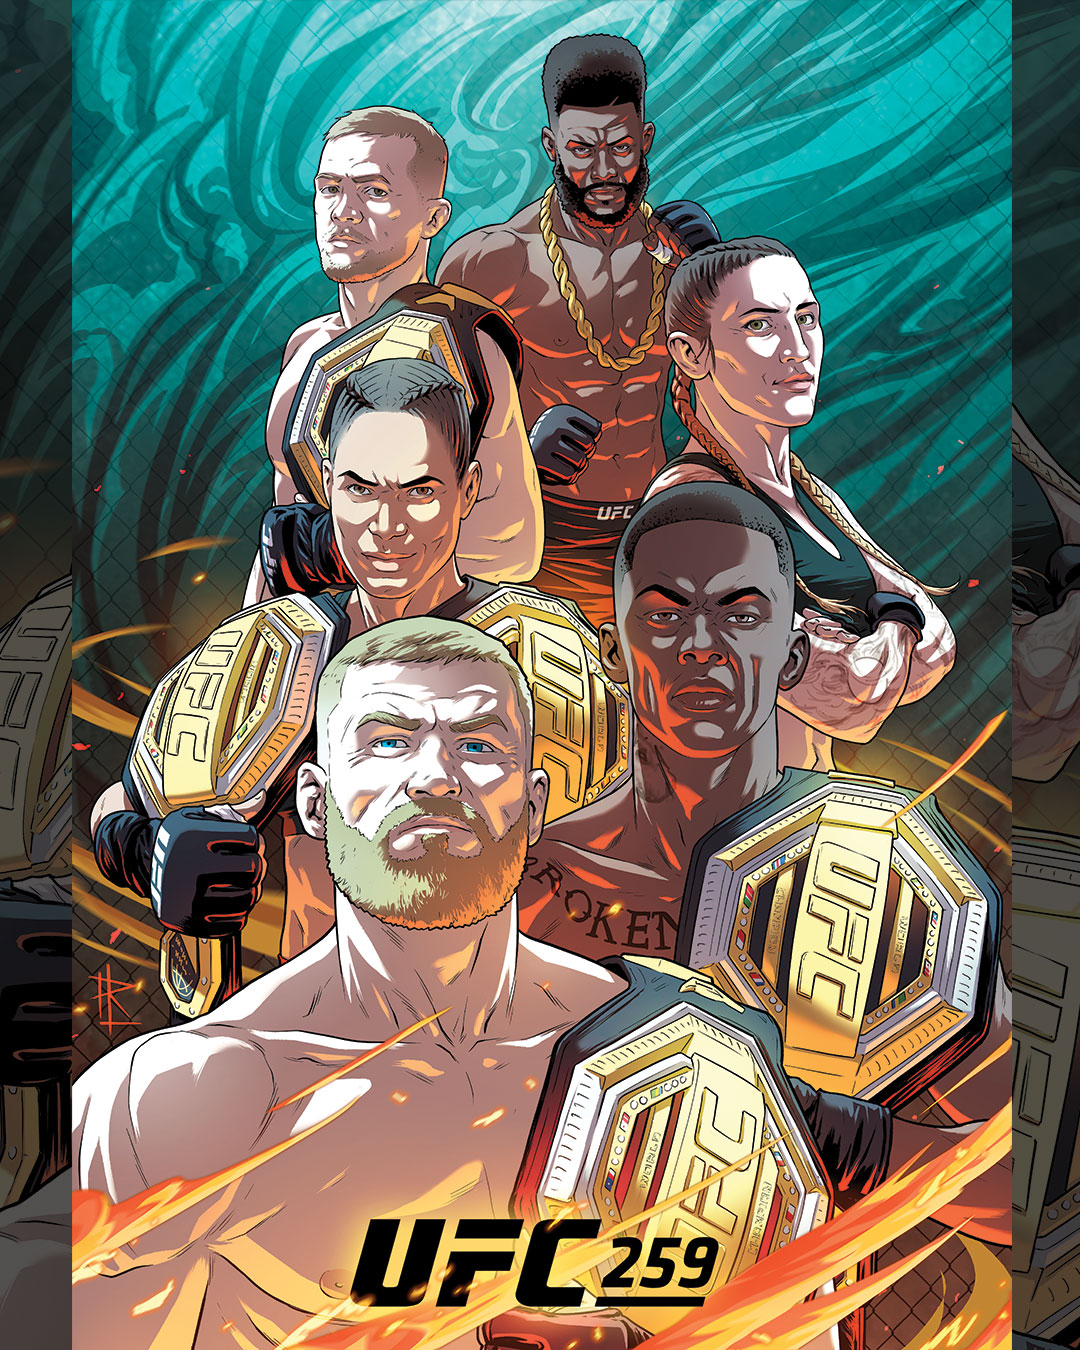 UFC 259 - Las Vegas  - Poster et affiche